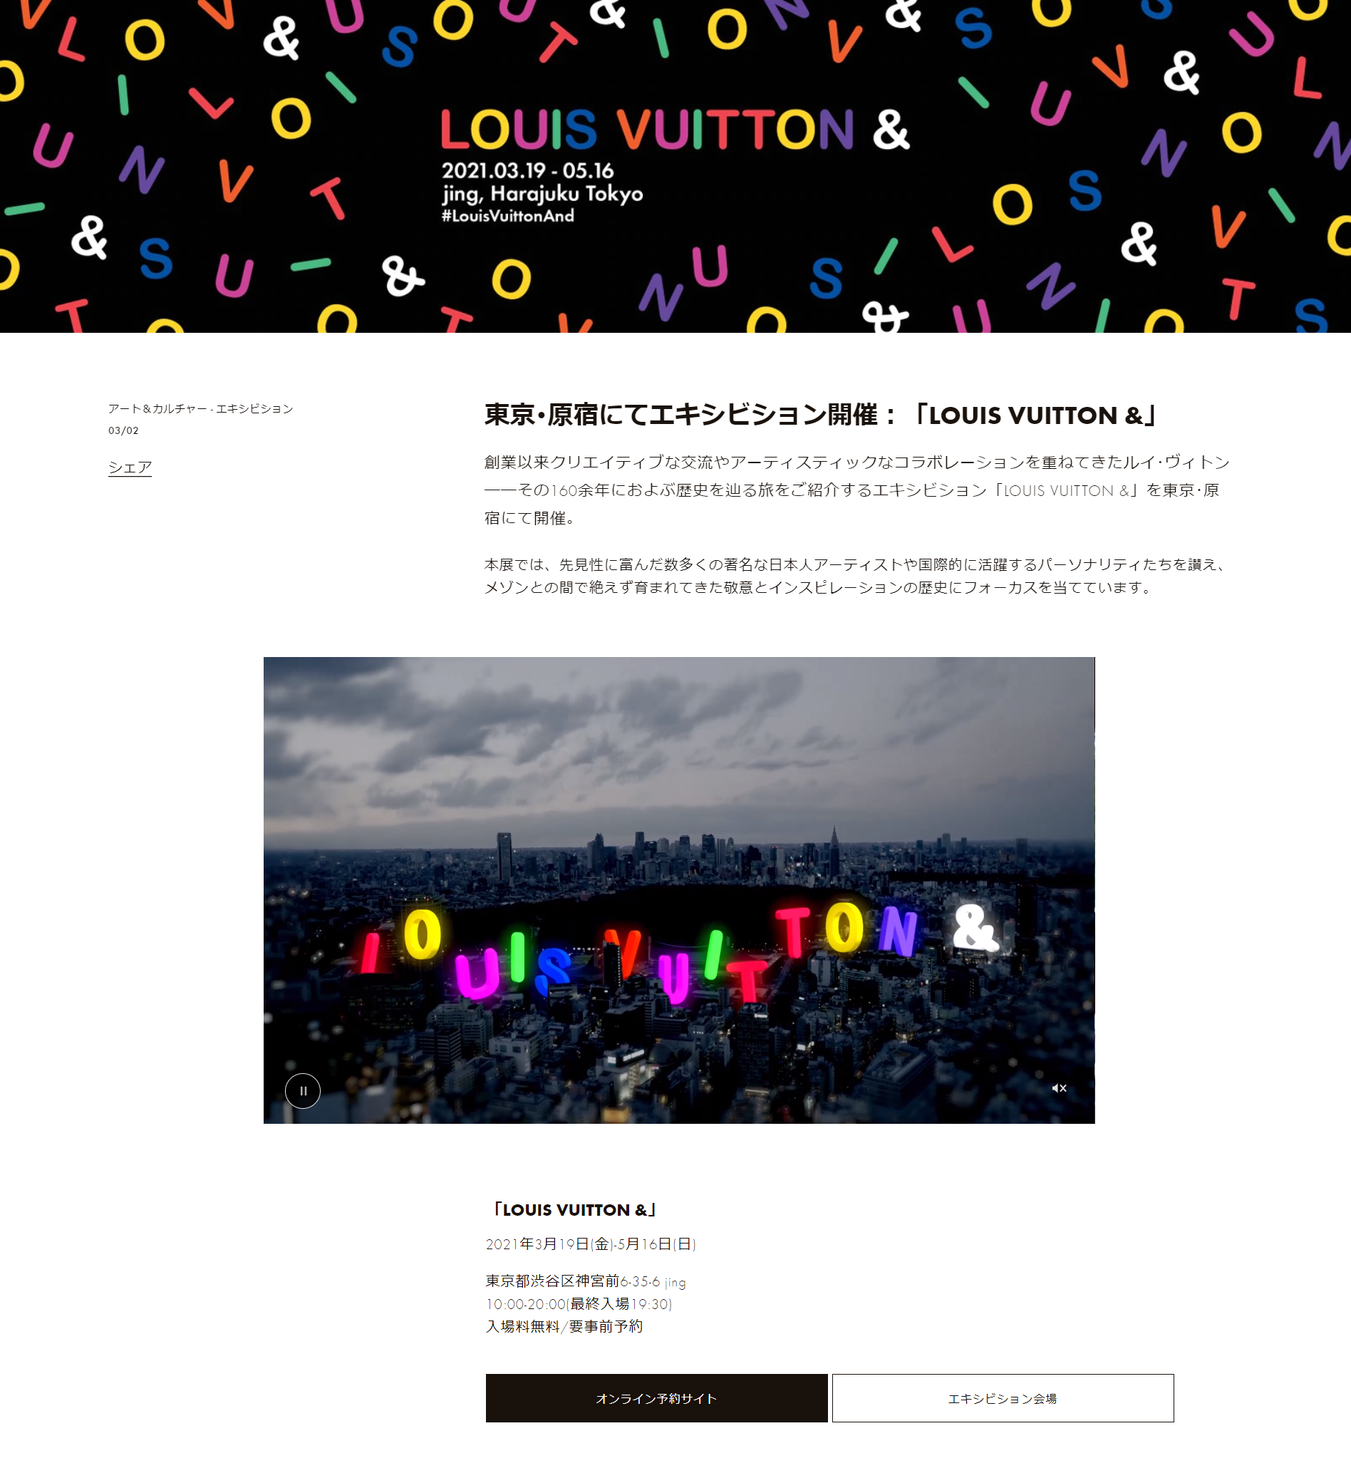 ルイ ヴィトン エキシビション Louis Vuitton のティーザー動画を公開 オンライン予約もスタート ルイ ヴィトン ジャパン株式会社のプレスリリース